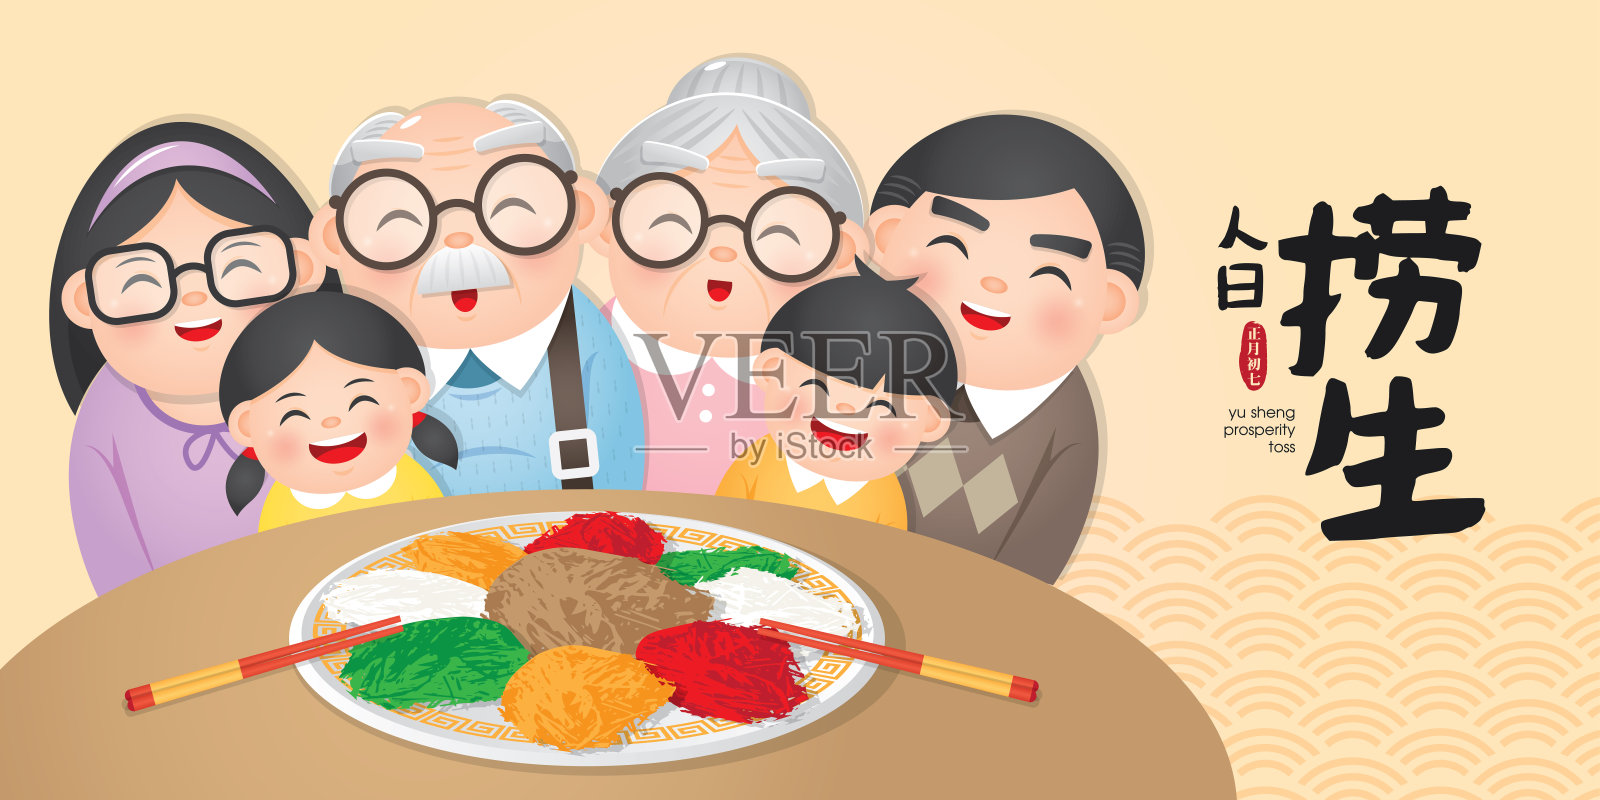 中国传统菜肴“楼桑”、“鱼尚”。通常作为开胃菜，因为它象征着新年的“好运”。(翻译:繁荣的折腾)设计模板素材